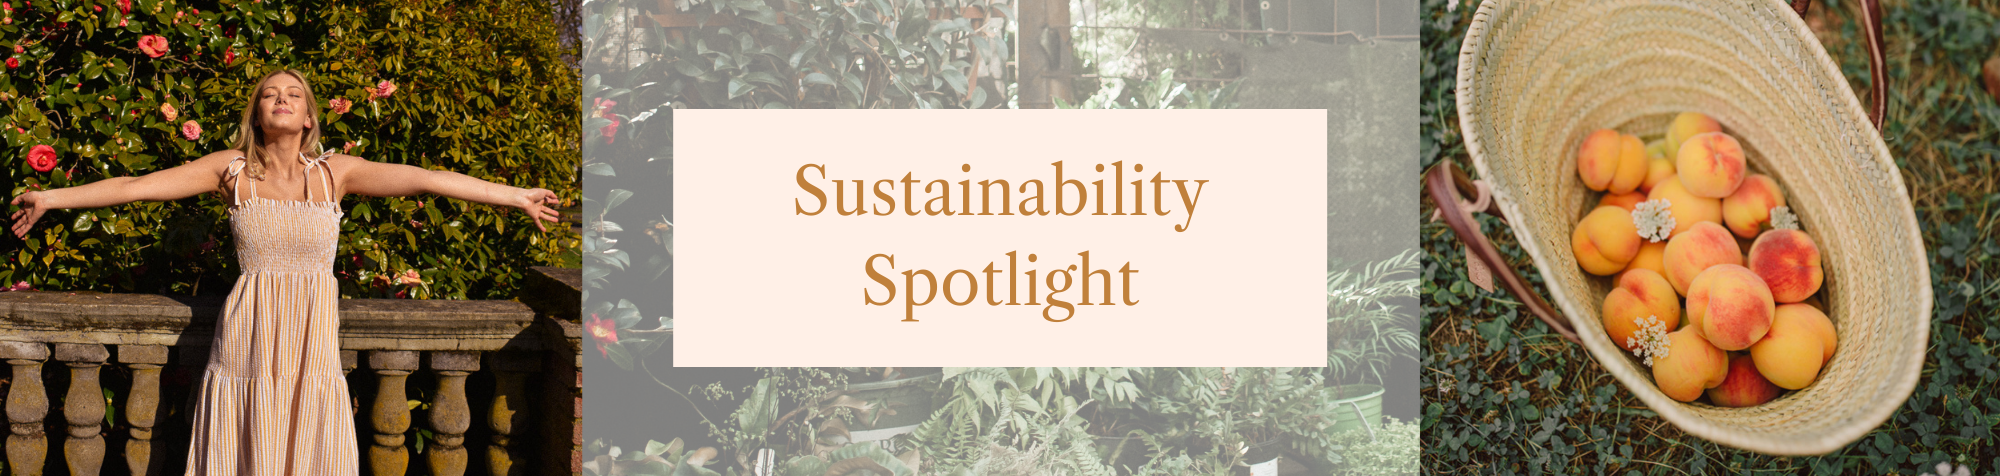 Spotlight on Sustainability